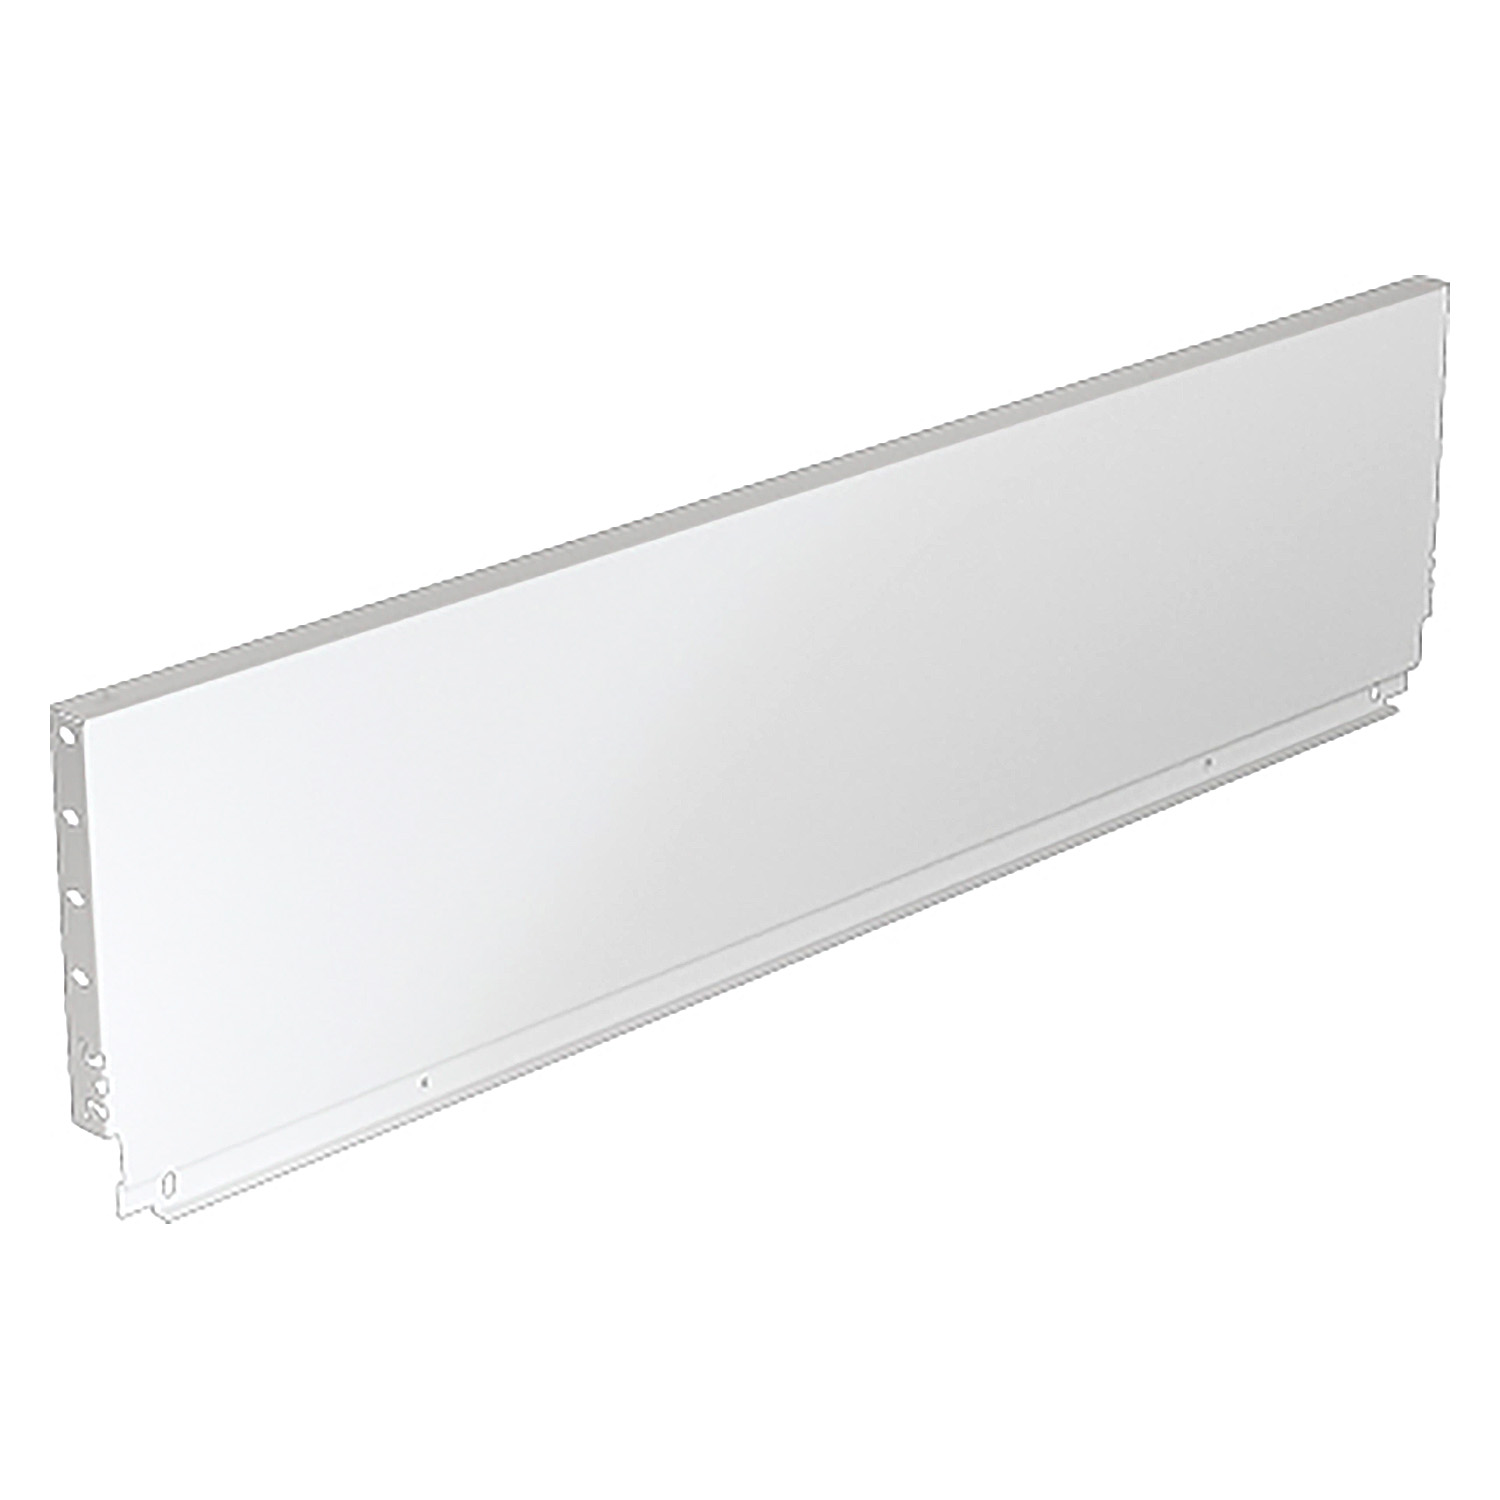 HETTICH Stahlrückwand ArciTech, 218 x 1000 mm, weiß, 9121630